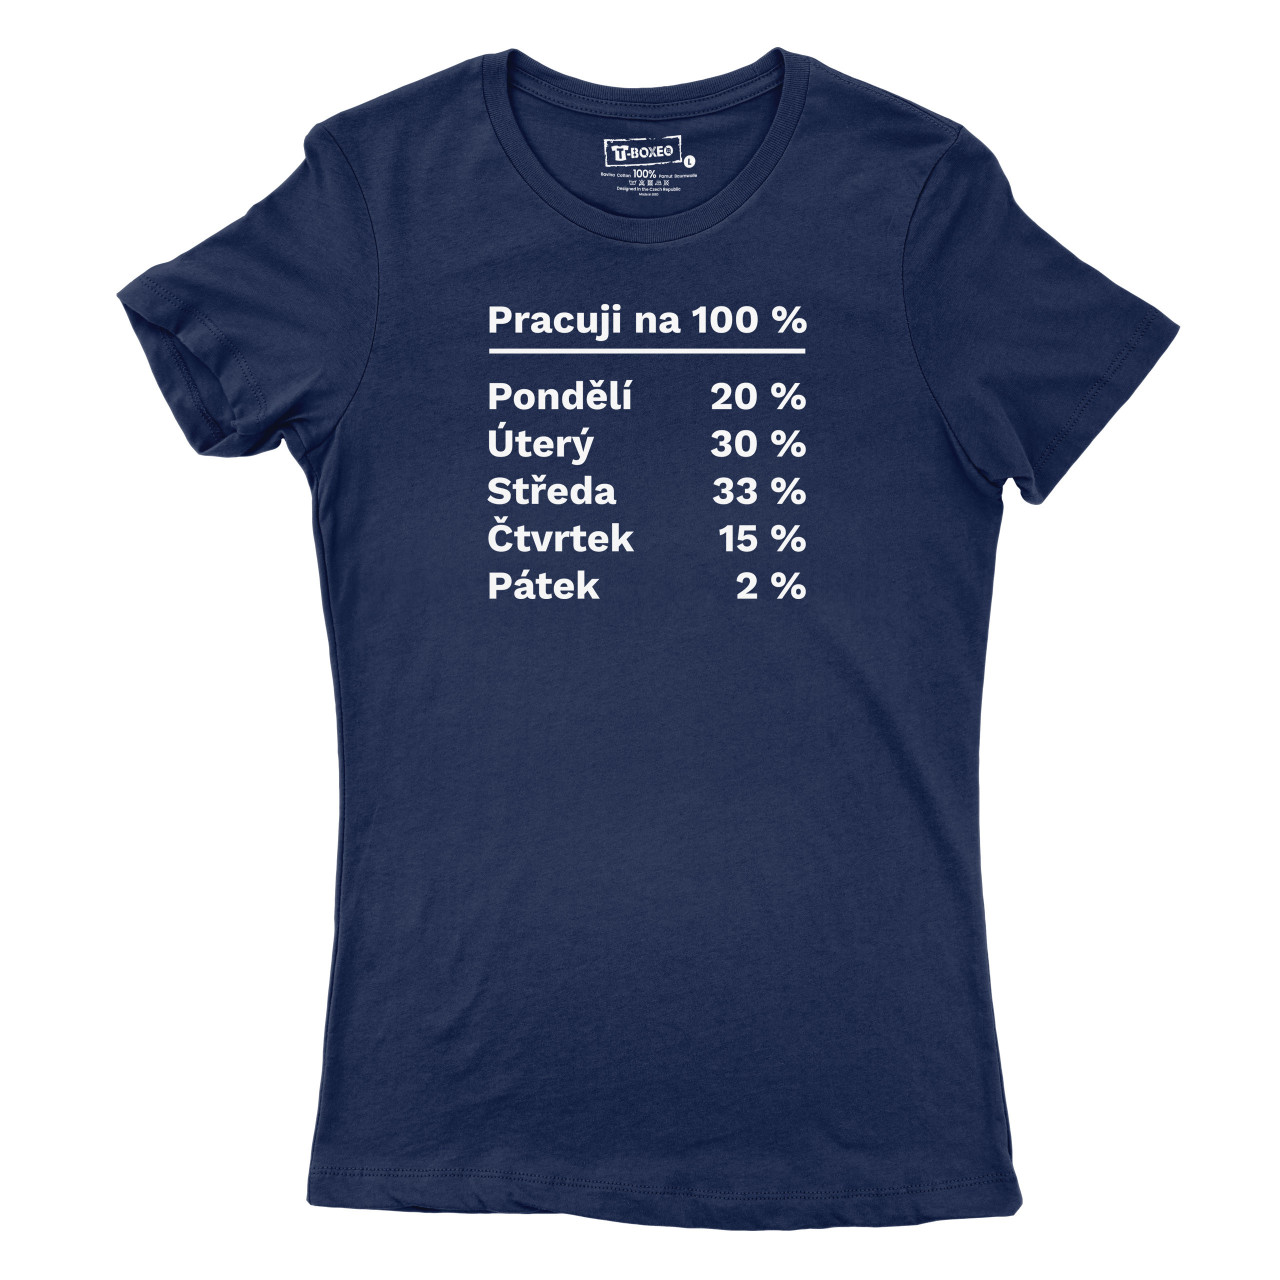 Dámské tričko s potiskem “Pracuji na 100 %”